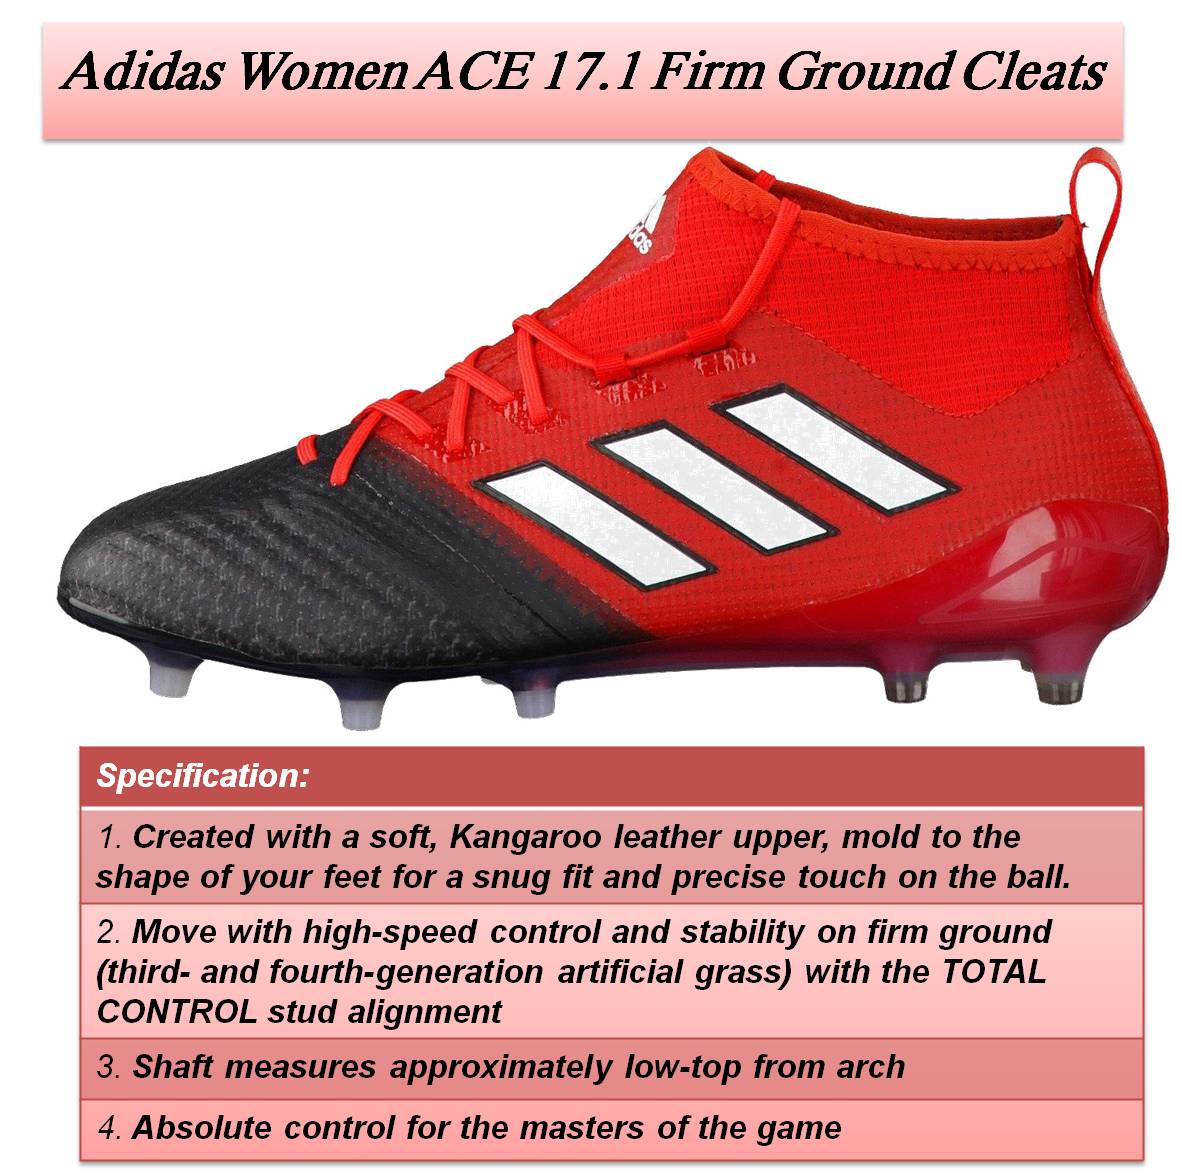 Adidas_Women_ACE_17.1_Firm_Ground_Cleats_Khelmart